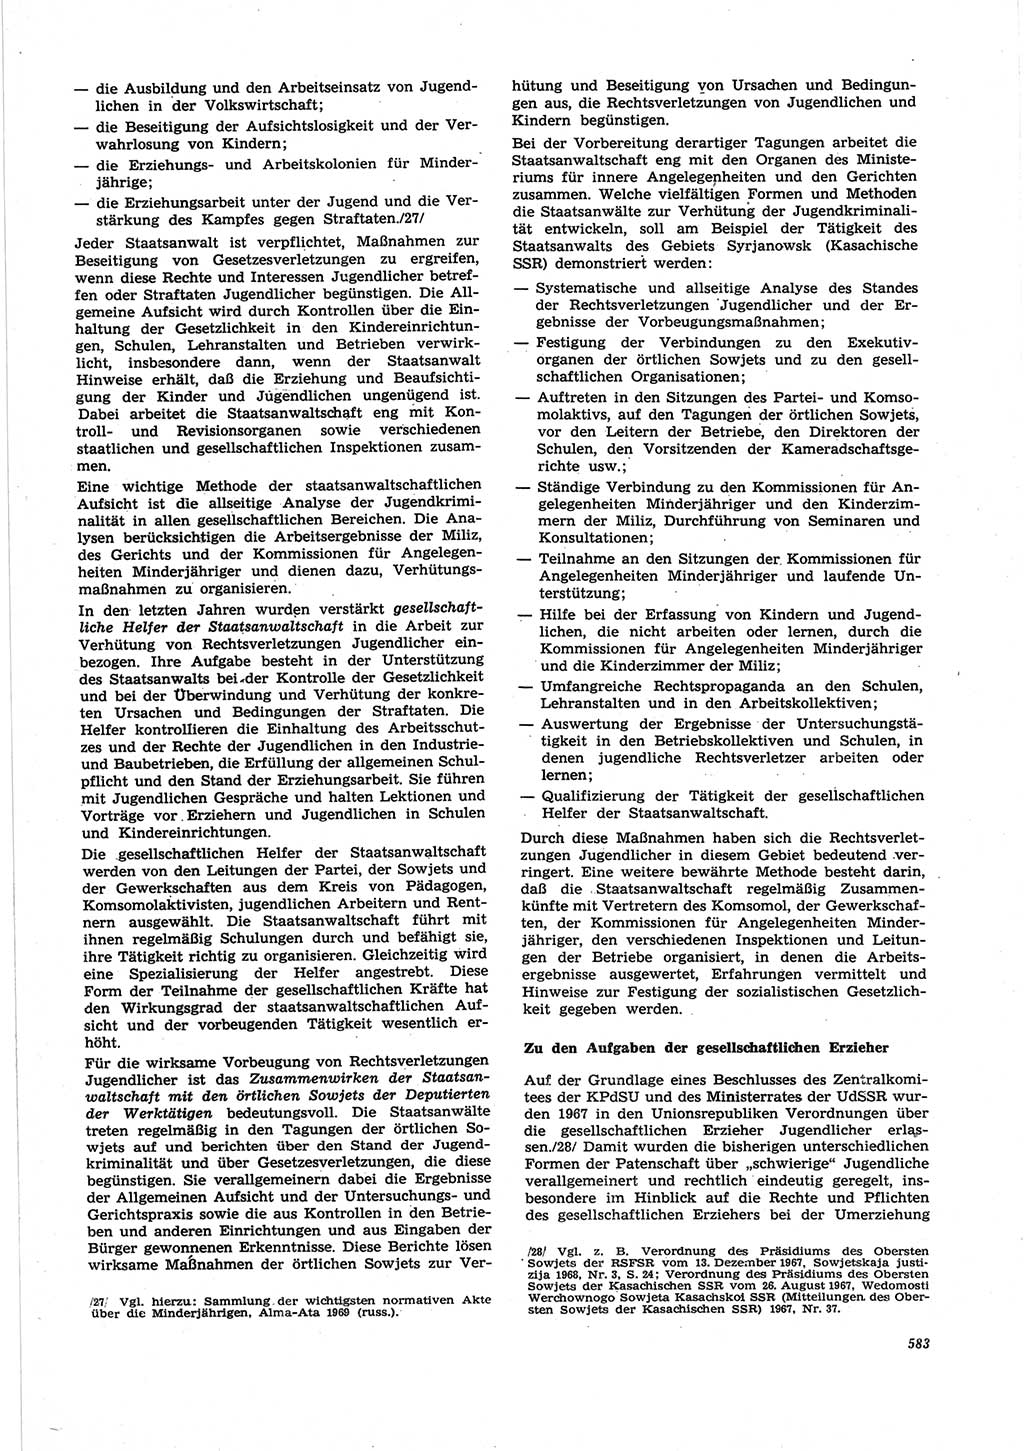 Neue Justiz (NJ), Zeitschrift für Recht und Rechtswissenschaft [Deutsche Demokratische Republik (DDR)], 25. Jahrgang 1971, Seite 583 (NJ DDR 1971, S. 583)